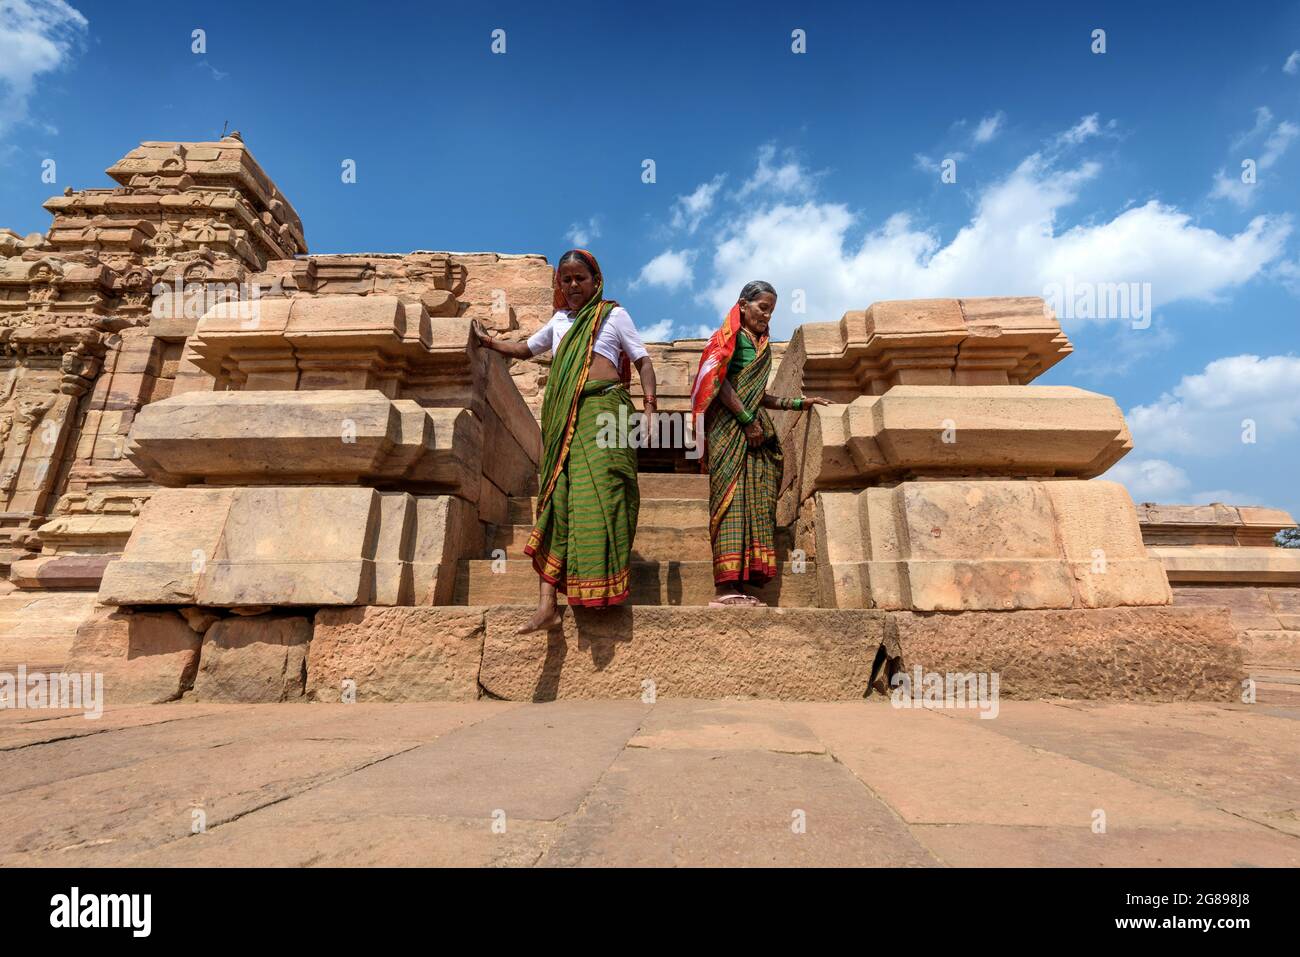 Pattadakal, Karnataka, India - 11 de enero de 2020 : El templo de Sangameshwar en el complejo del templo de Pattadakal, que data del siglo 7th-8th, el Chalu temprano Foto de stock